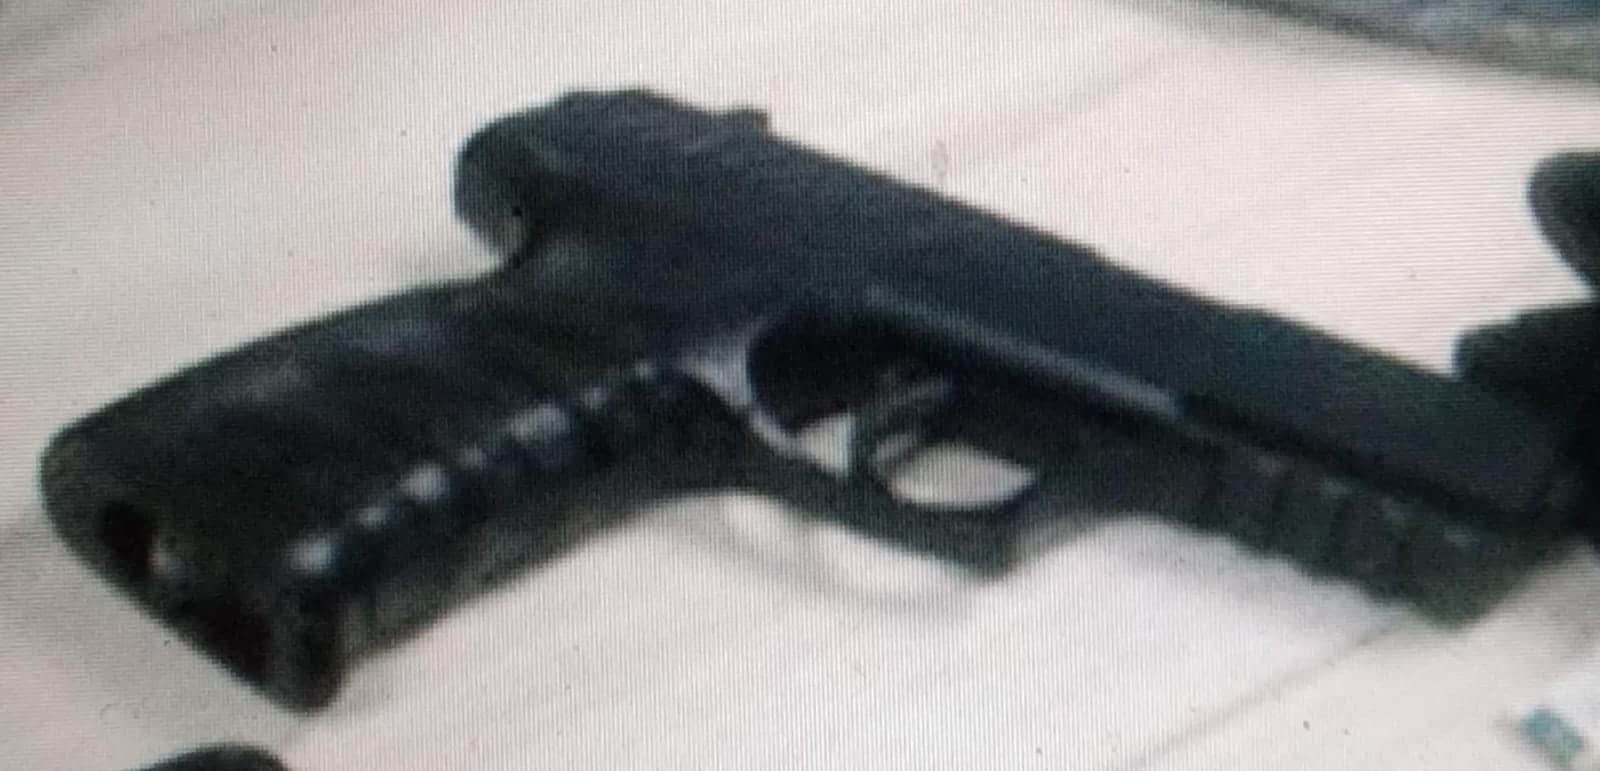 אקדח האירוסופט שנתפס במקום שבו הושלך המטען ברמת גן | צילום: משטרת ישראל